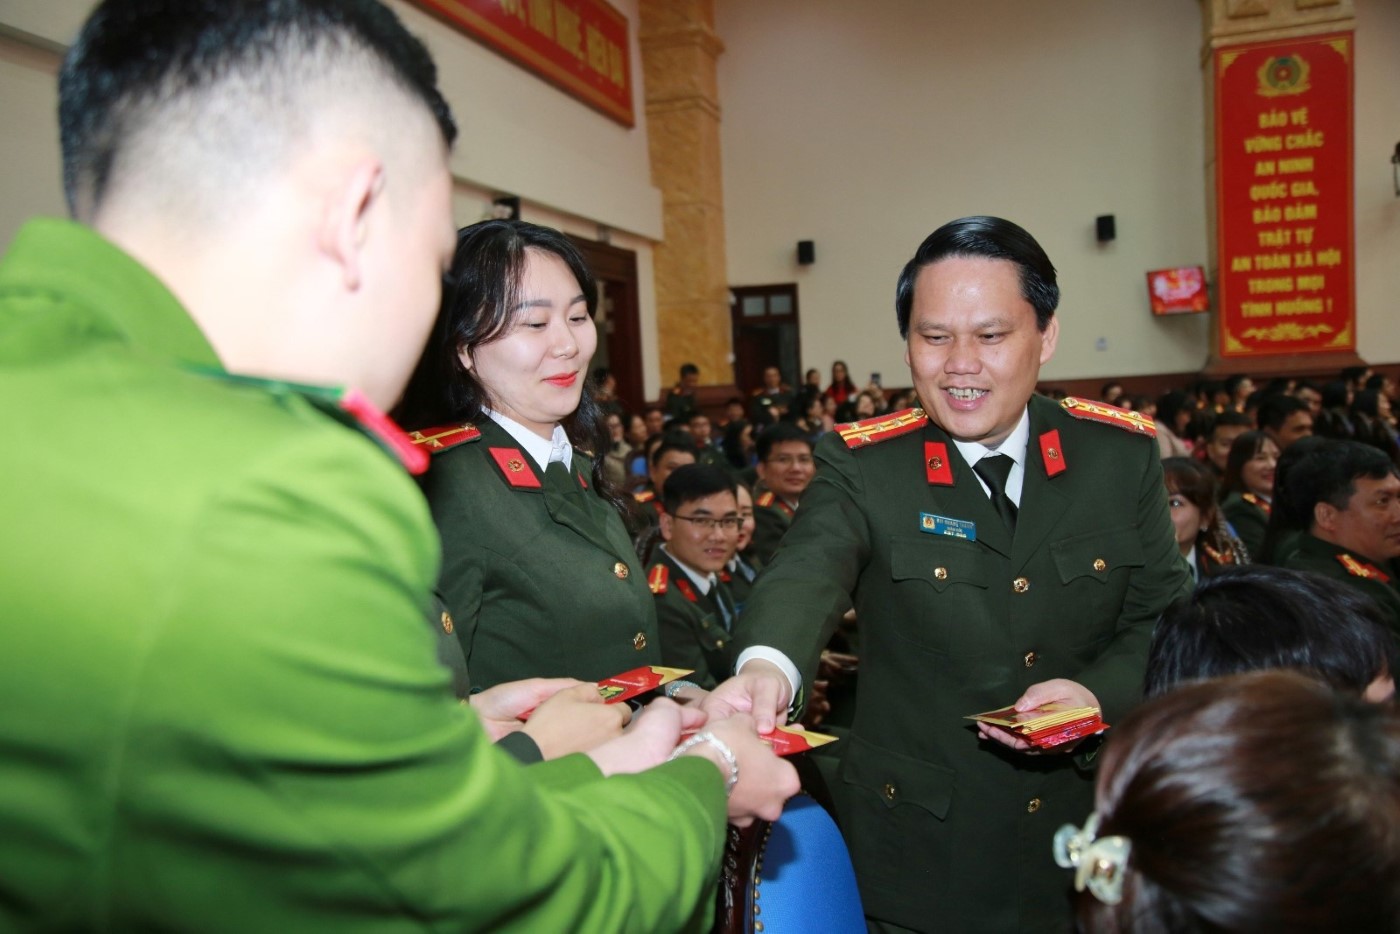 Đồng chí Đại tá Bùi Quang Thanh, Giám đốc Công an tỉnh mừng tuổi cán bộ, chiến sĩ thực hiện nhiệm vụ thường trực chiến đấu bảo đảm an ninh trật tự (ANTT) trong dịp Tết Nguyên đán